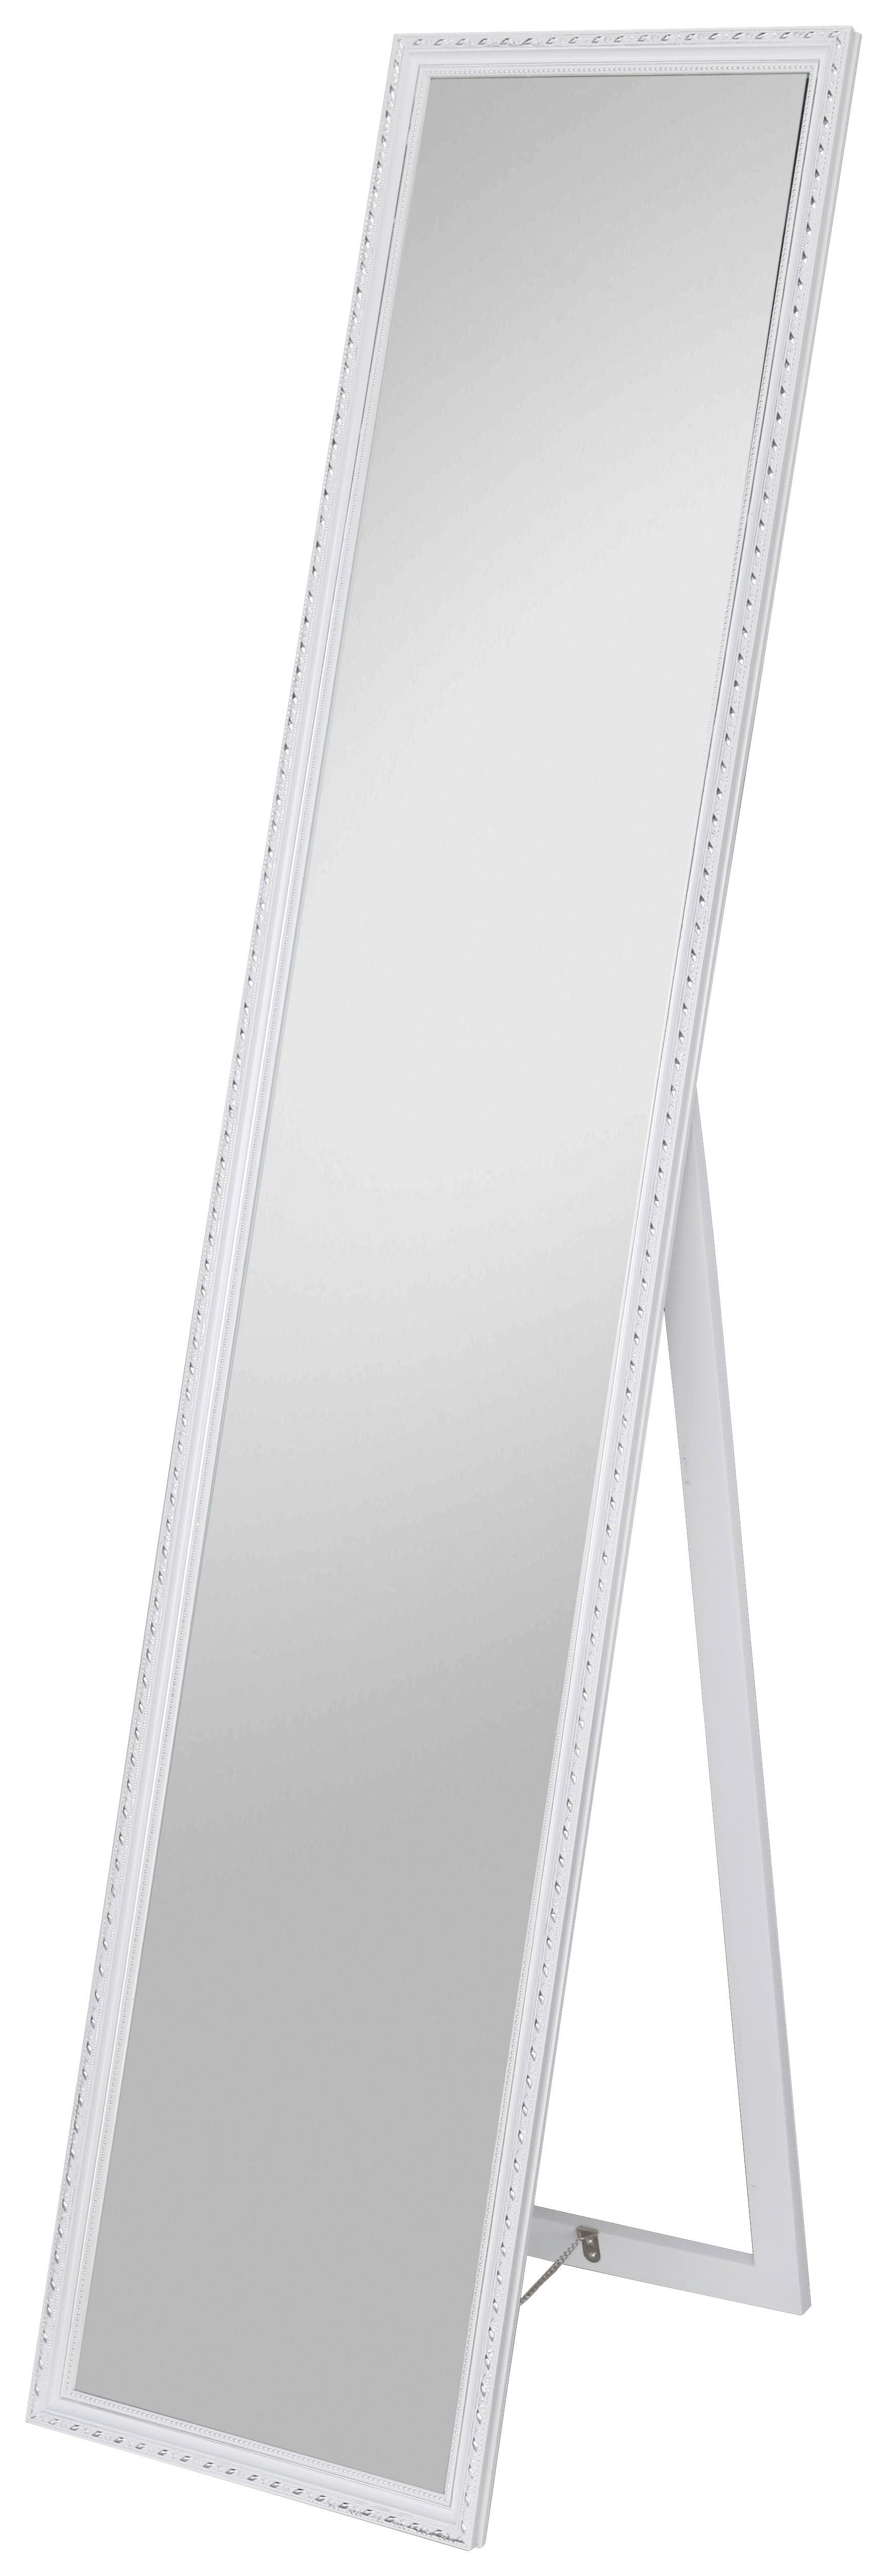 Samostojeće Ogledalo Pisa - bijela/srebrne boje, Modern, staklo/drvni materijal (34/160/2,3cm) - Modern Living